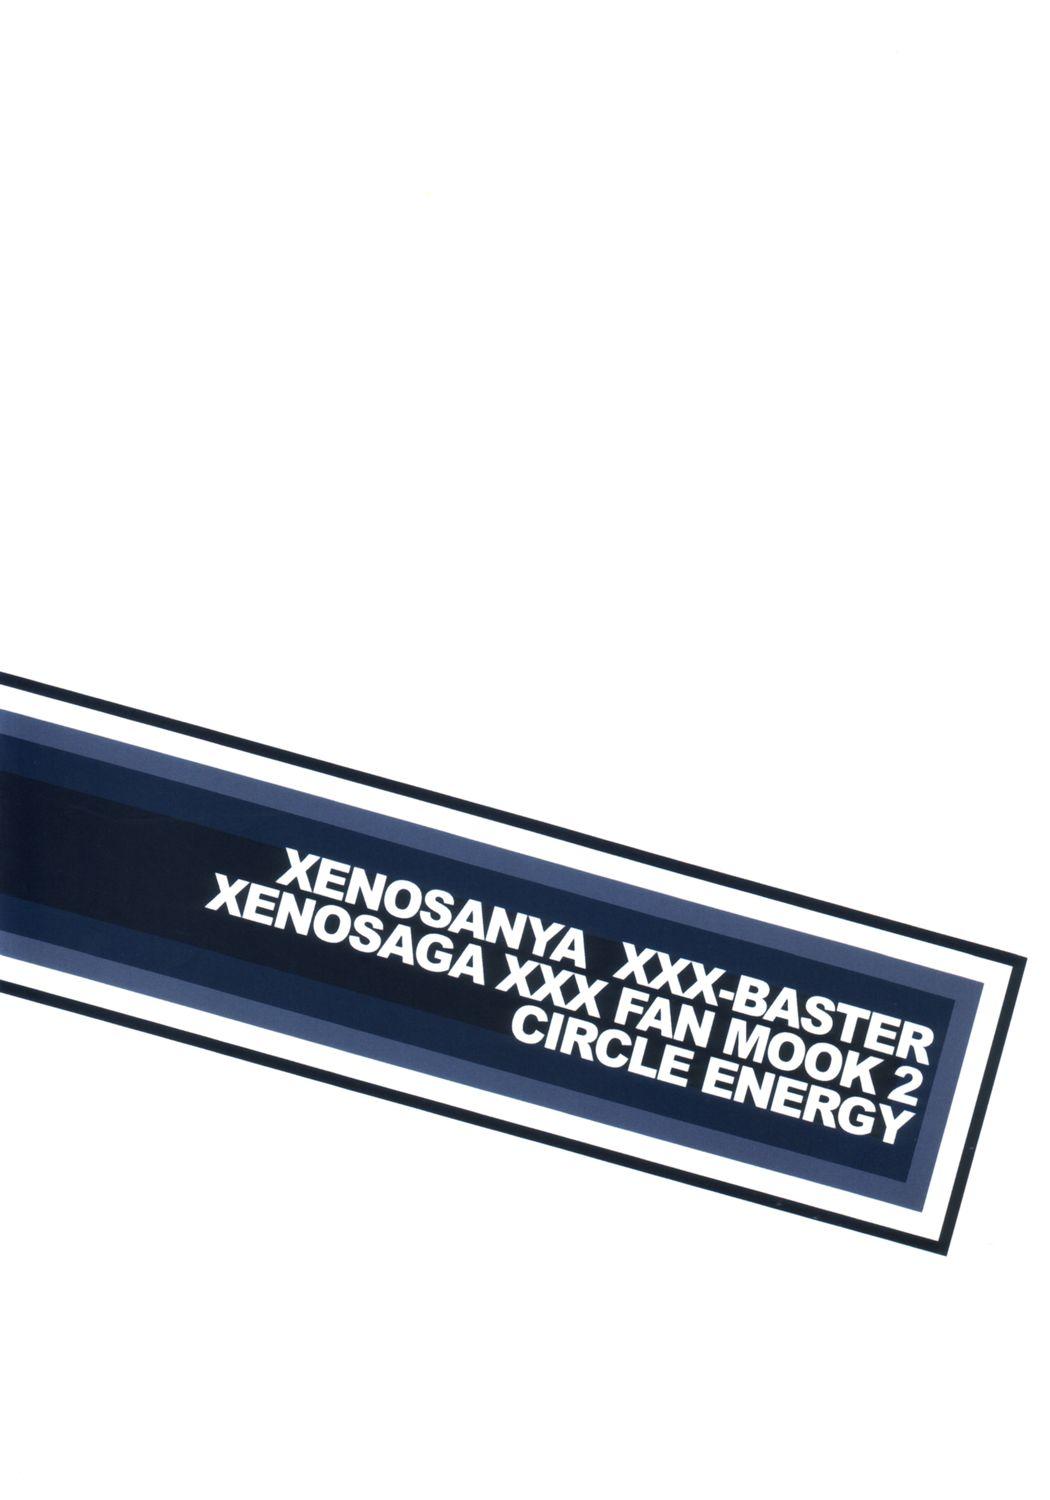 Xenosanya XXX-BASTER 33